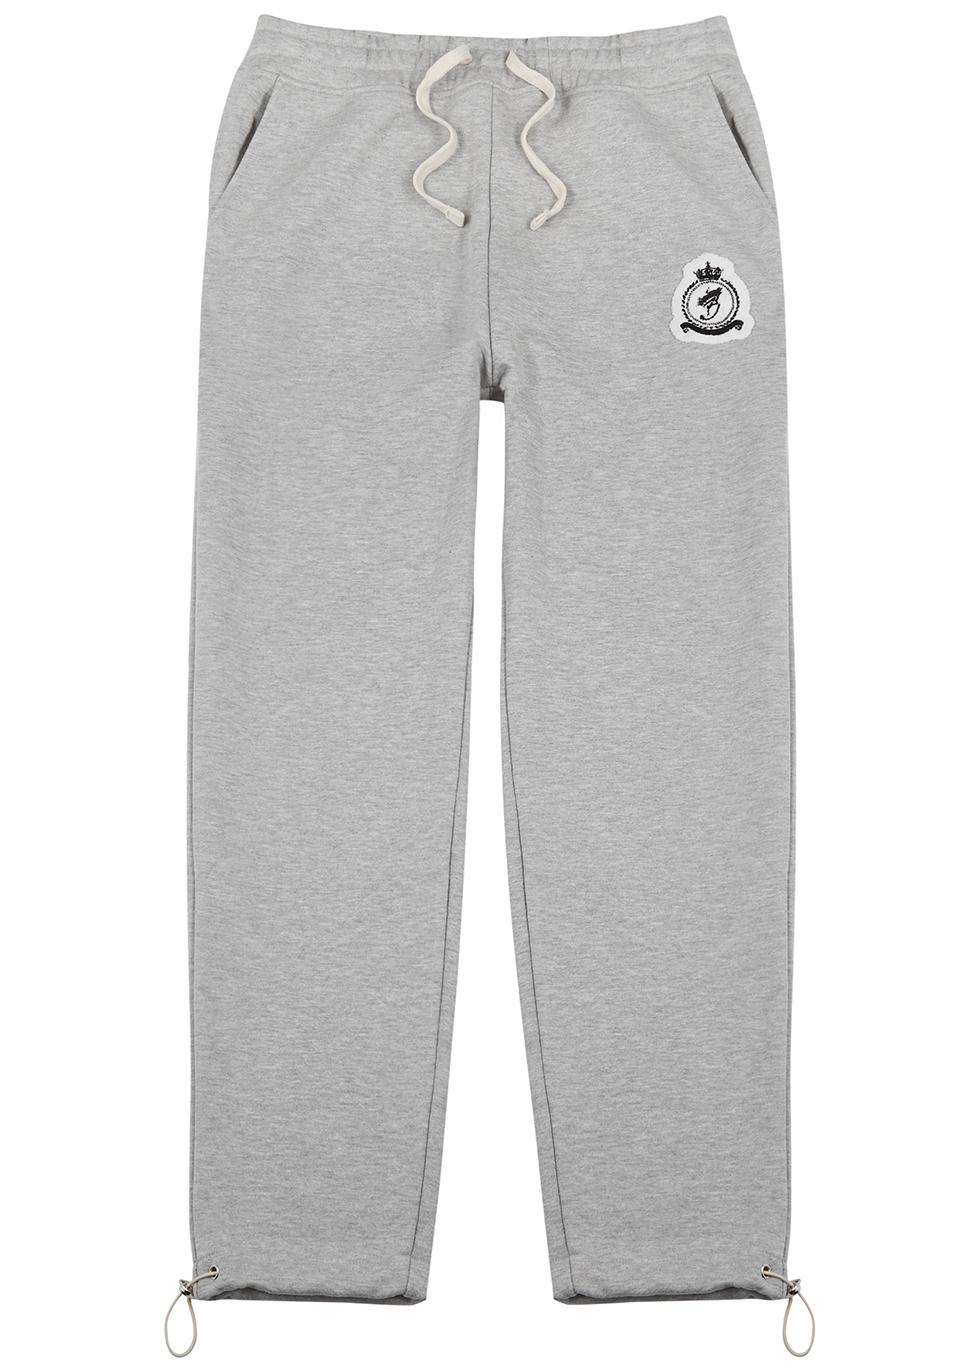 Grey logo cotton-blend sweatpants by BENJART